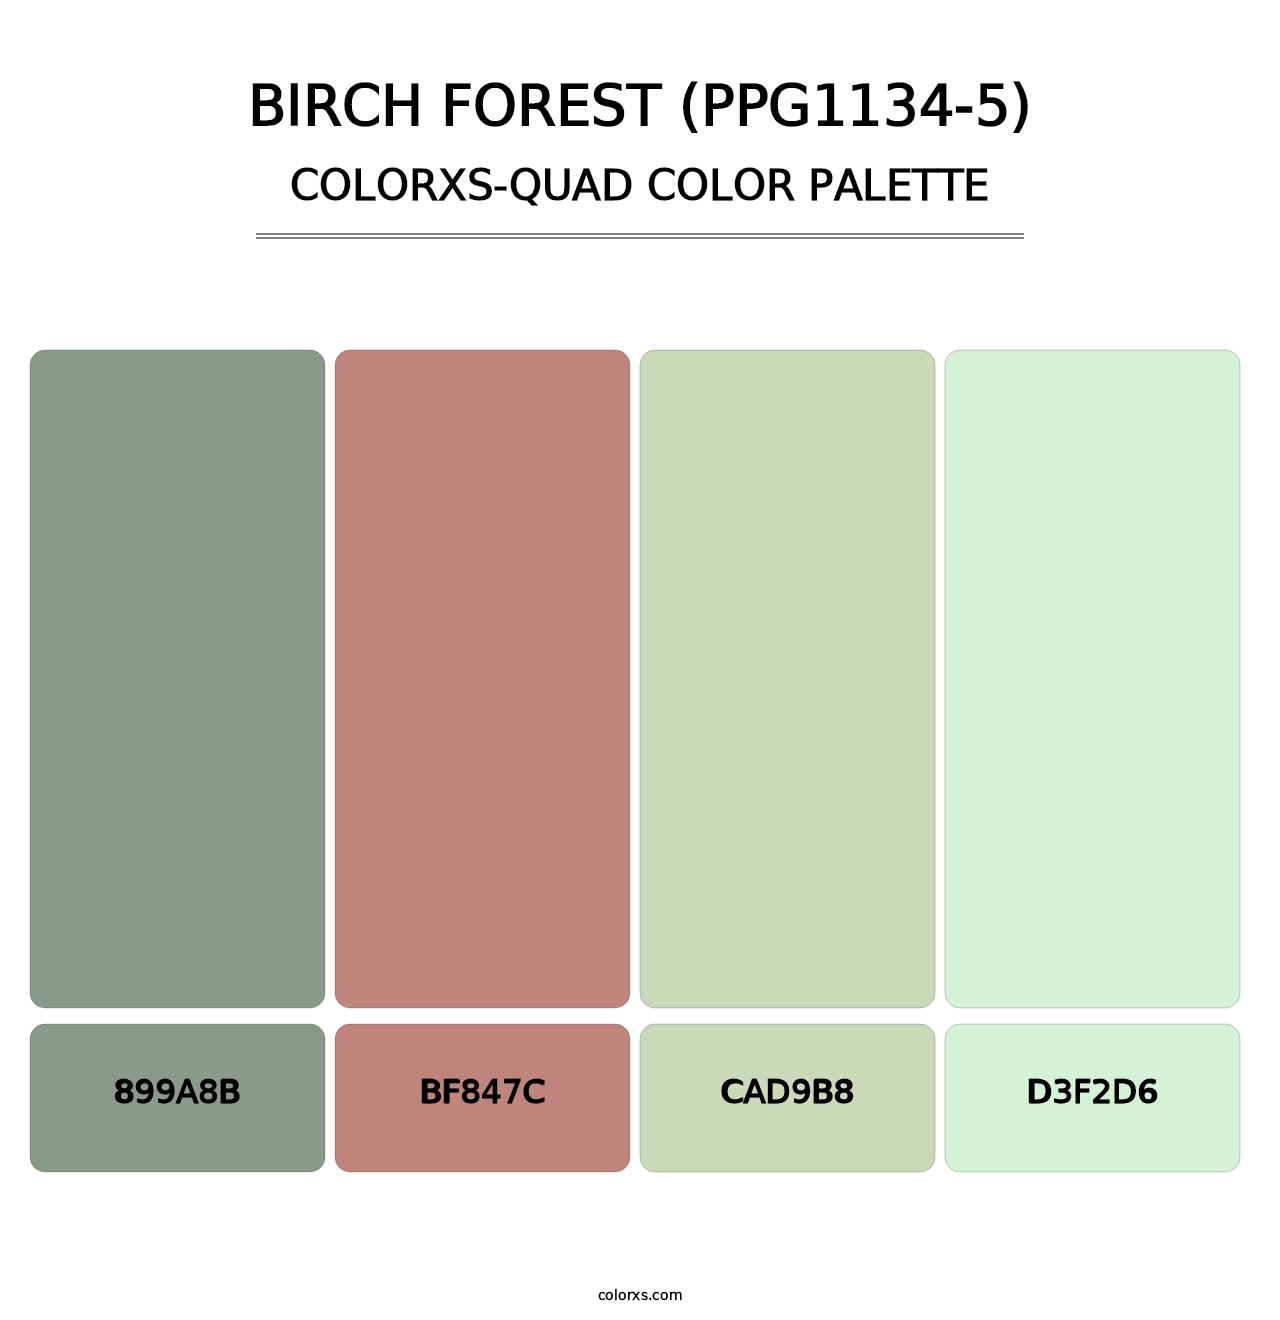 Birch Forest (PPG1134-5) - Colorxs Quad Palette